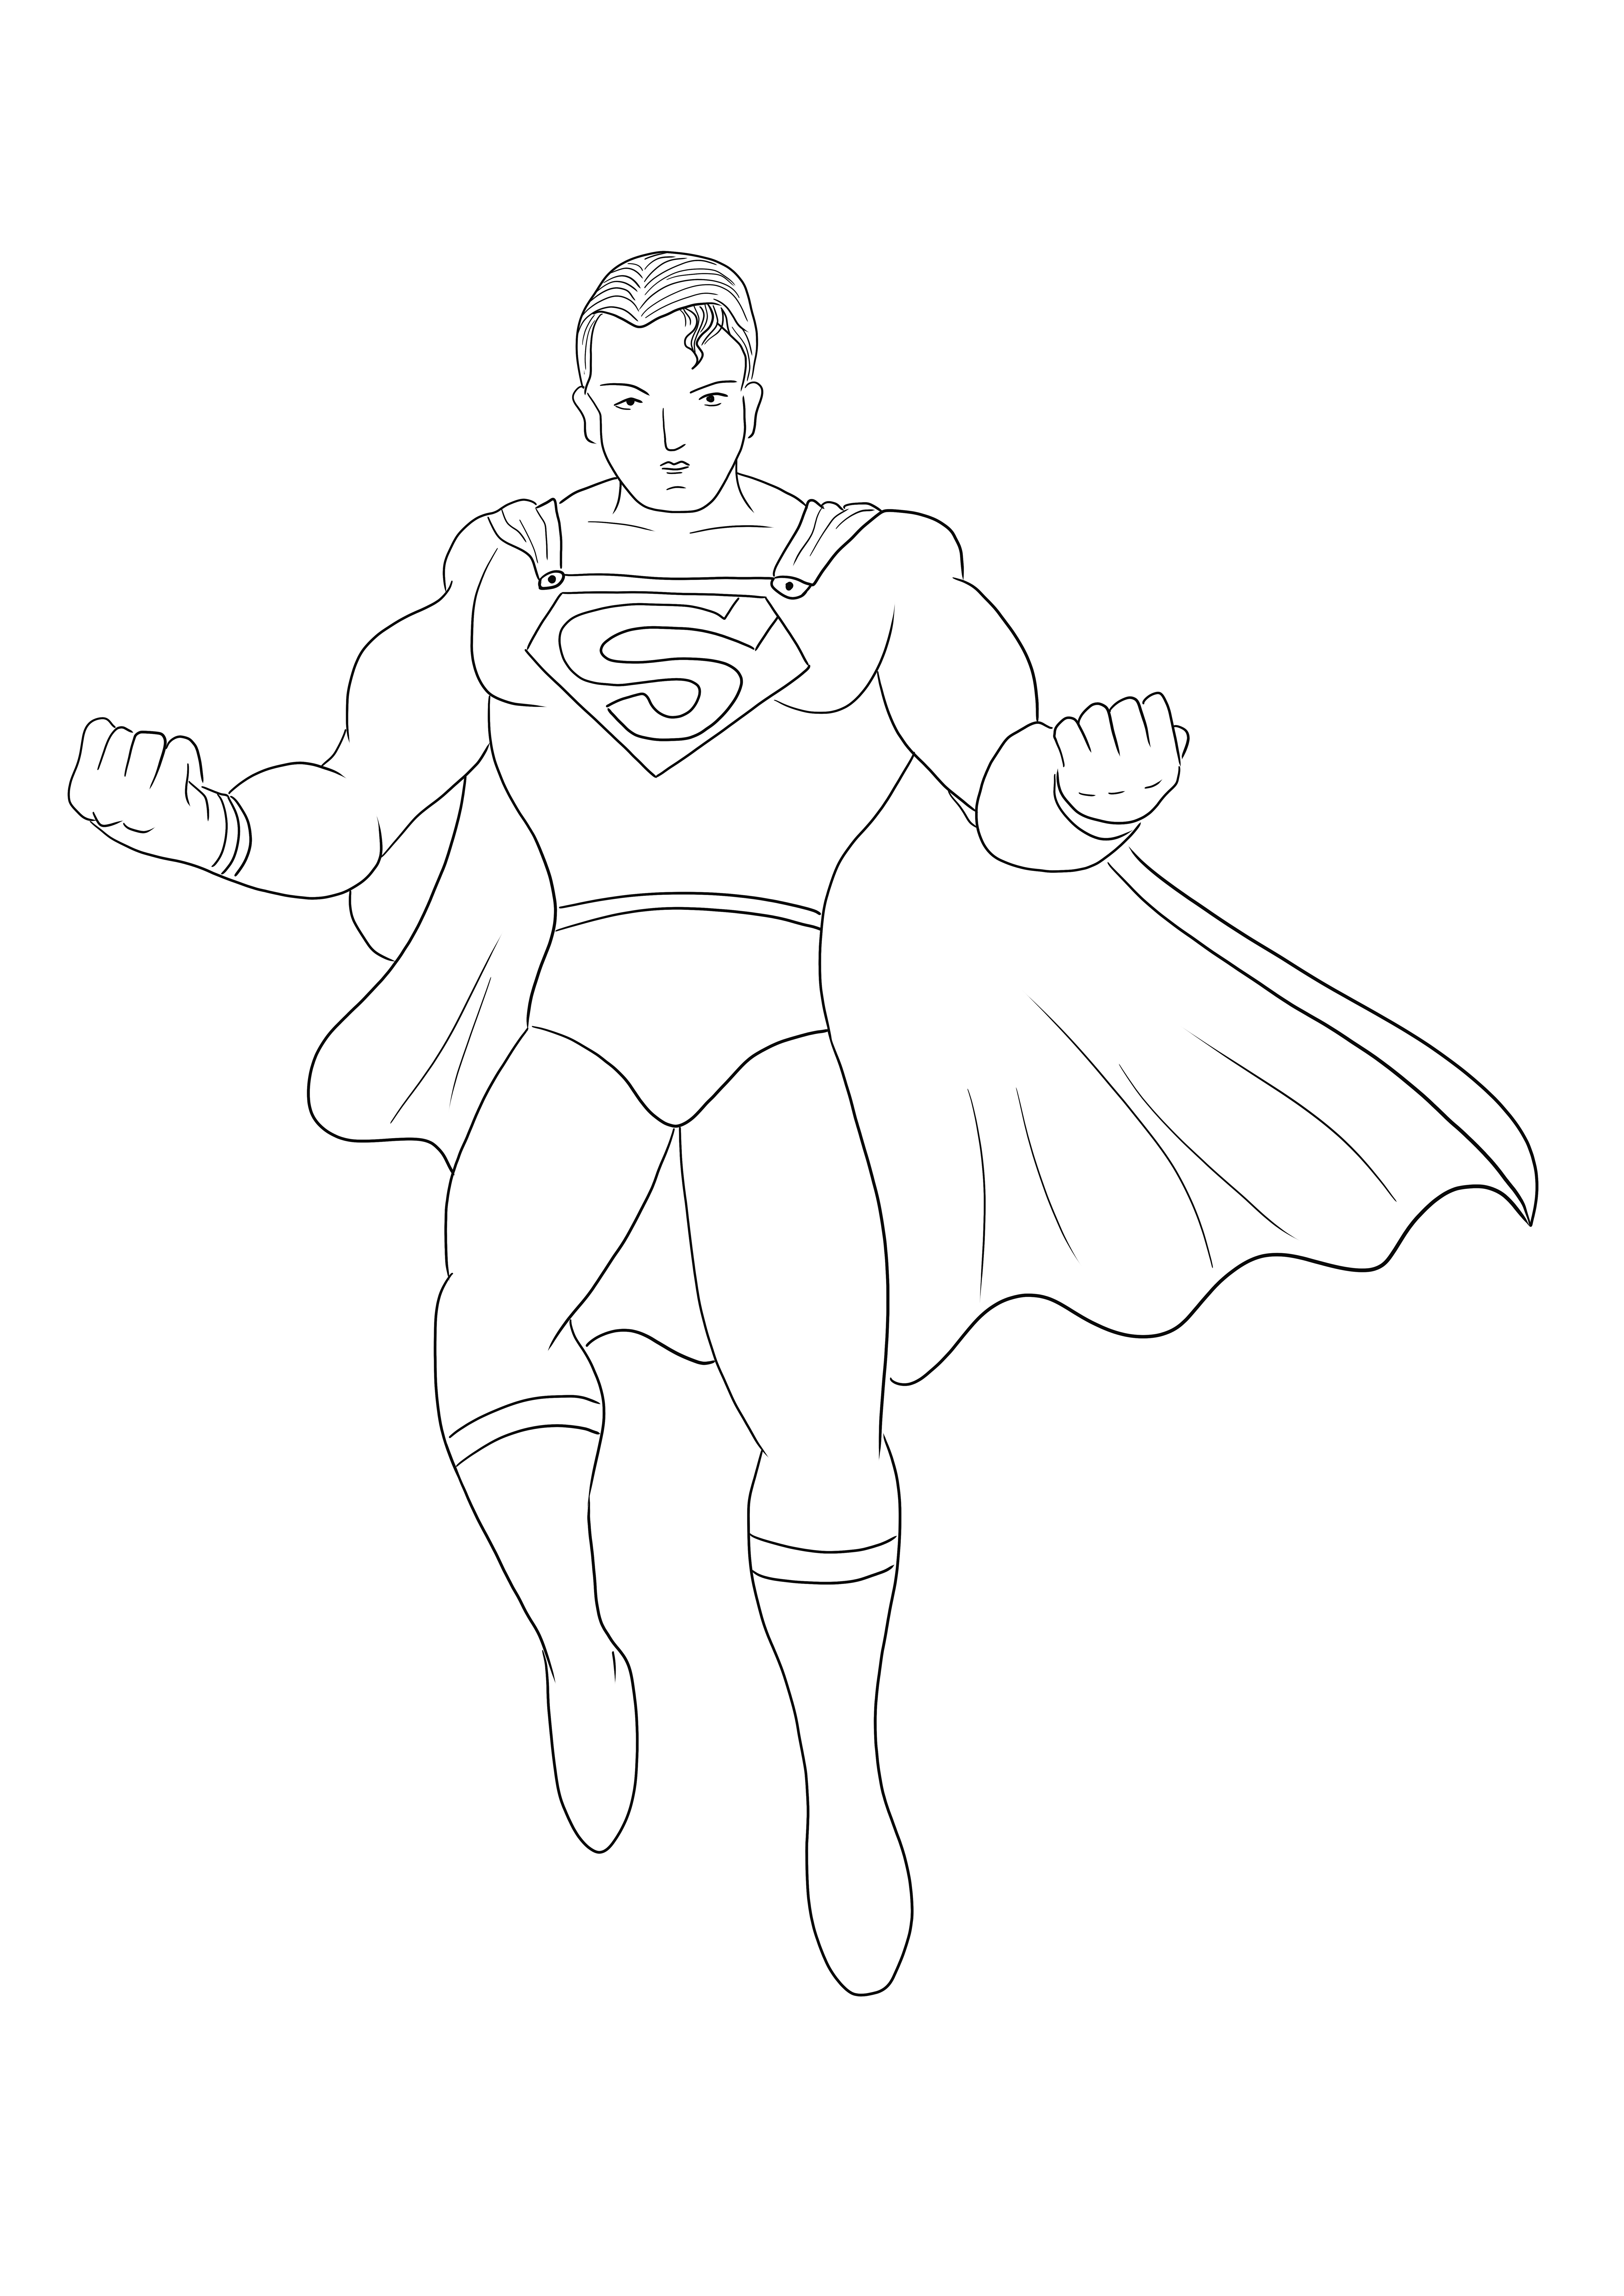 Das einfache und einfache Malblatt des Superman-Helden kostenlos zum Ausdrucken